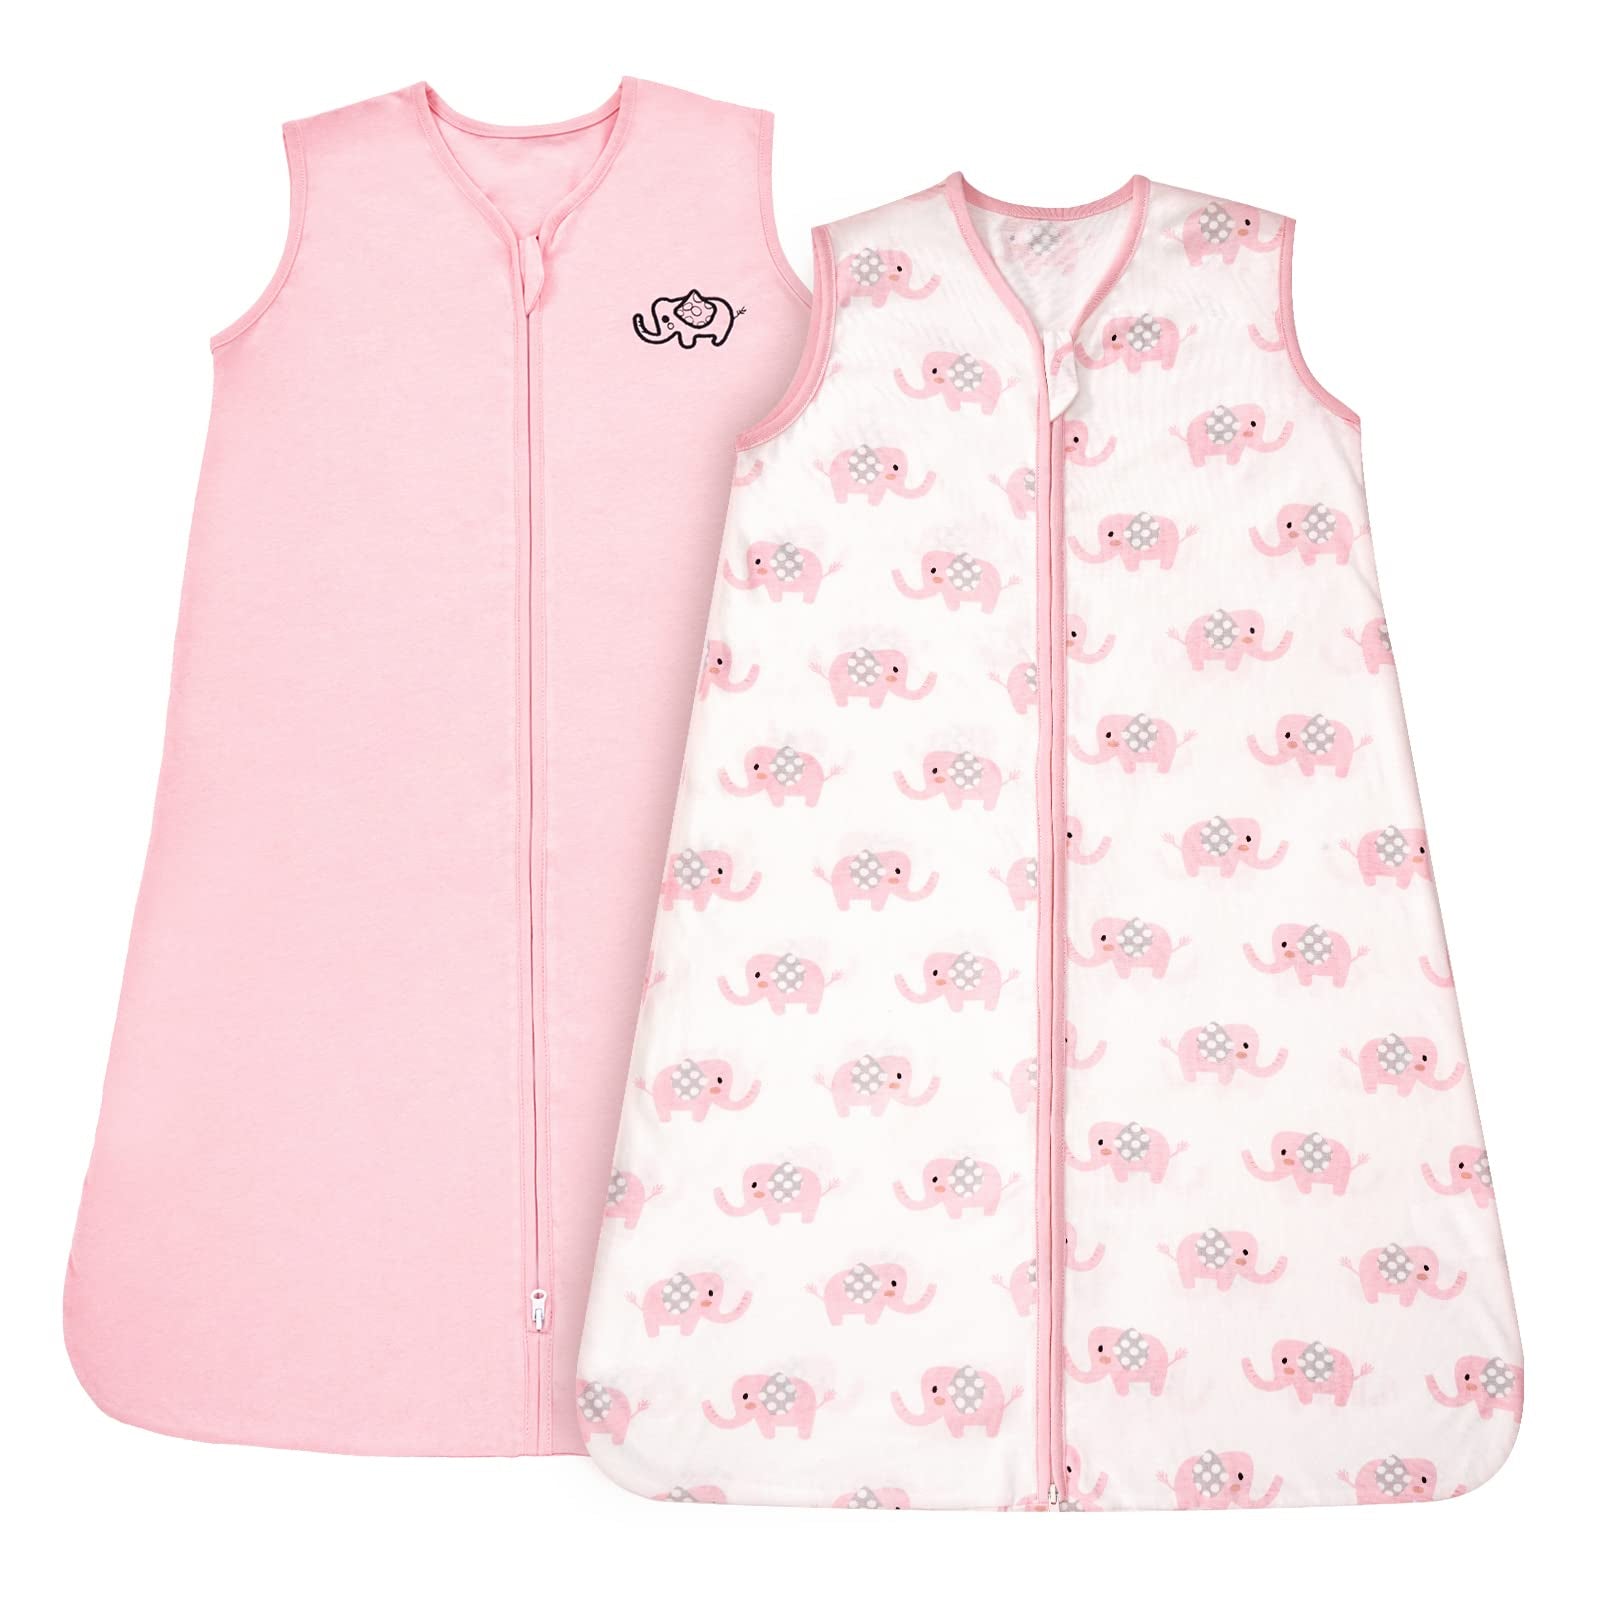 TILLYOU Saco de dormir – Juego de 2 mantas de algodón para bebé, 6-12 meses